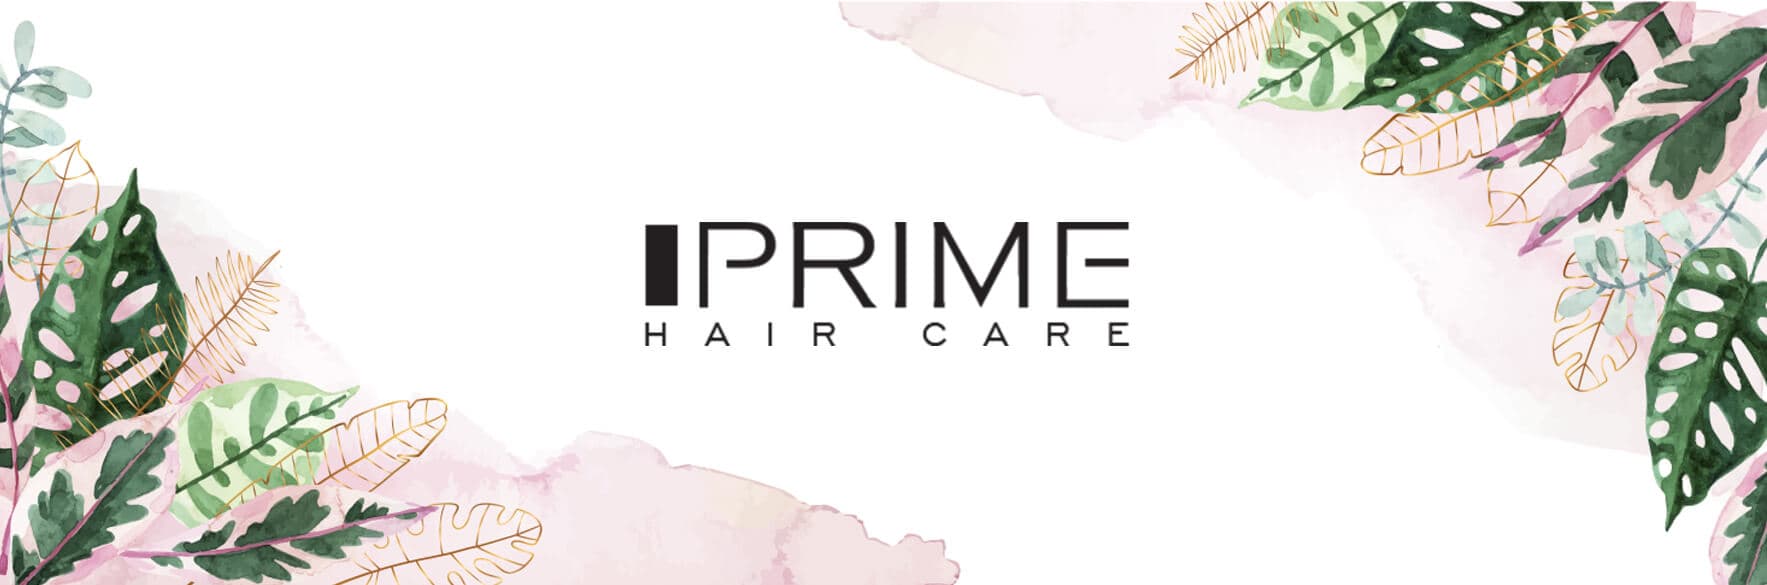 محصولات پریم PRIME آرایشی و بهداشتی